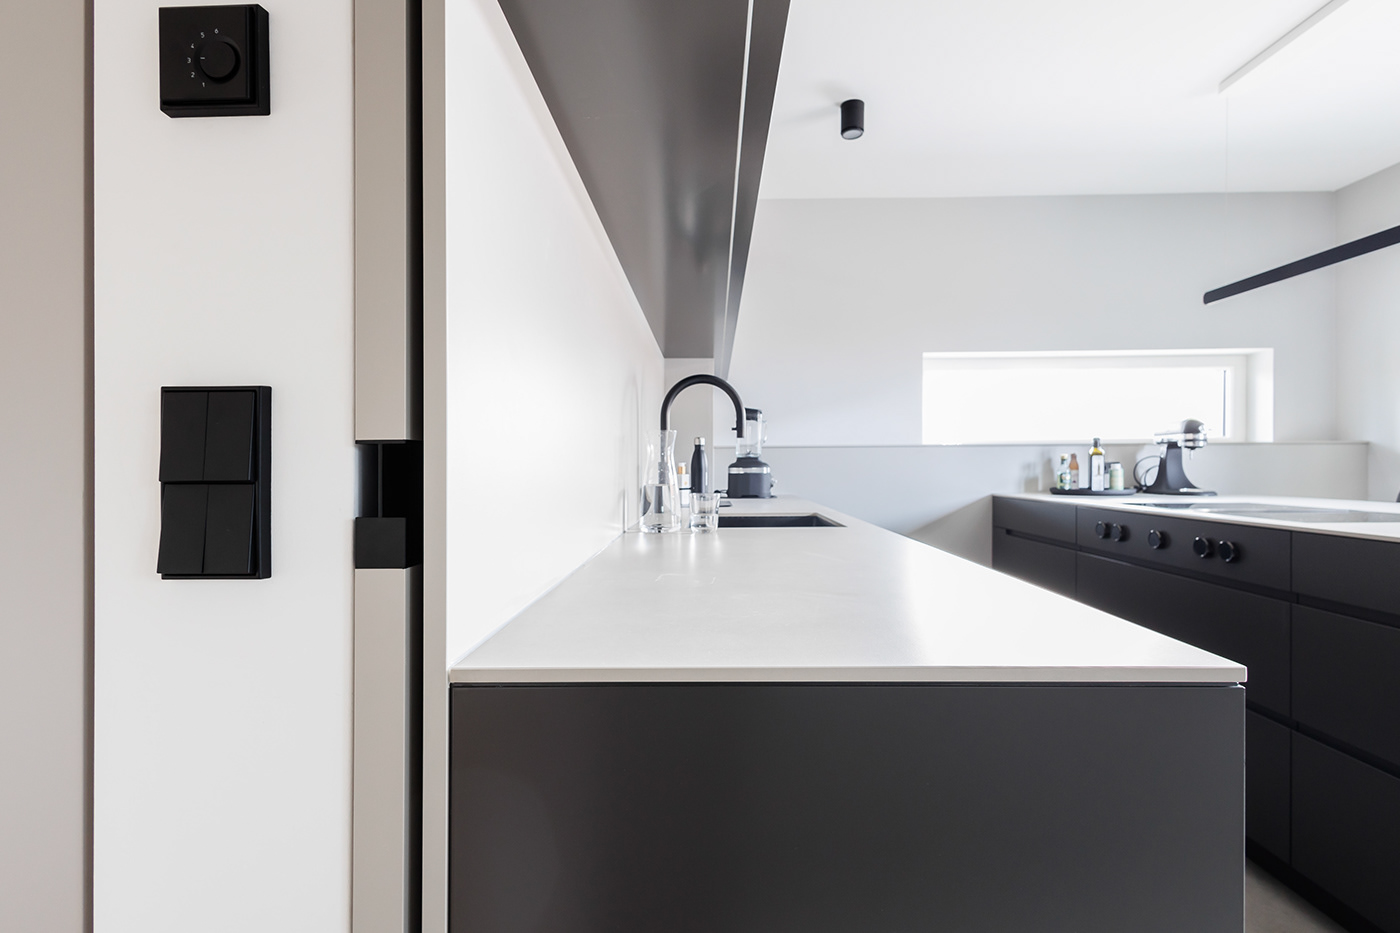 Interior interior design  küche kitchen Innenarchitektur garderobe schreiner furniture einbauküchen